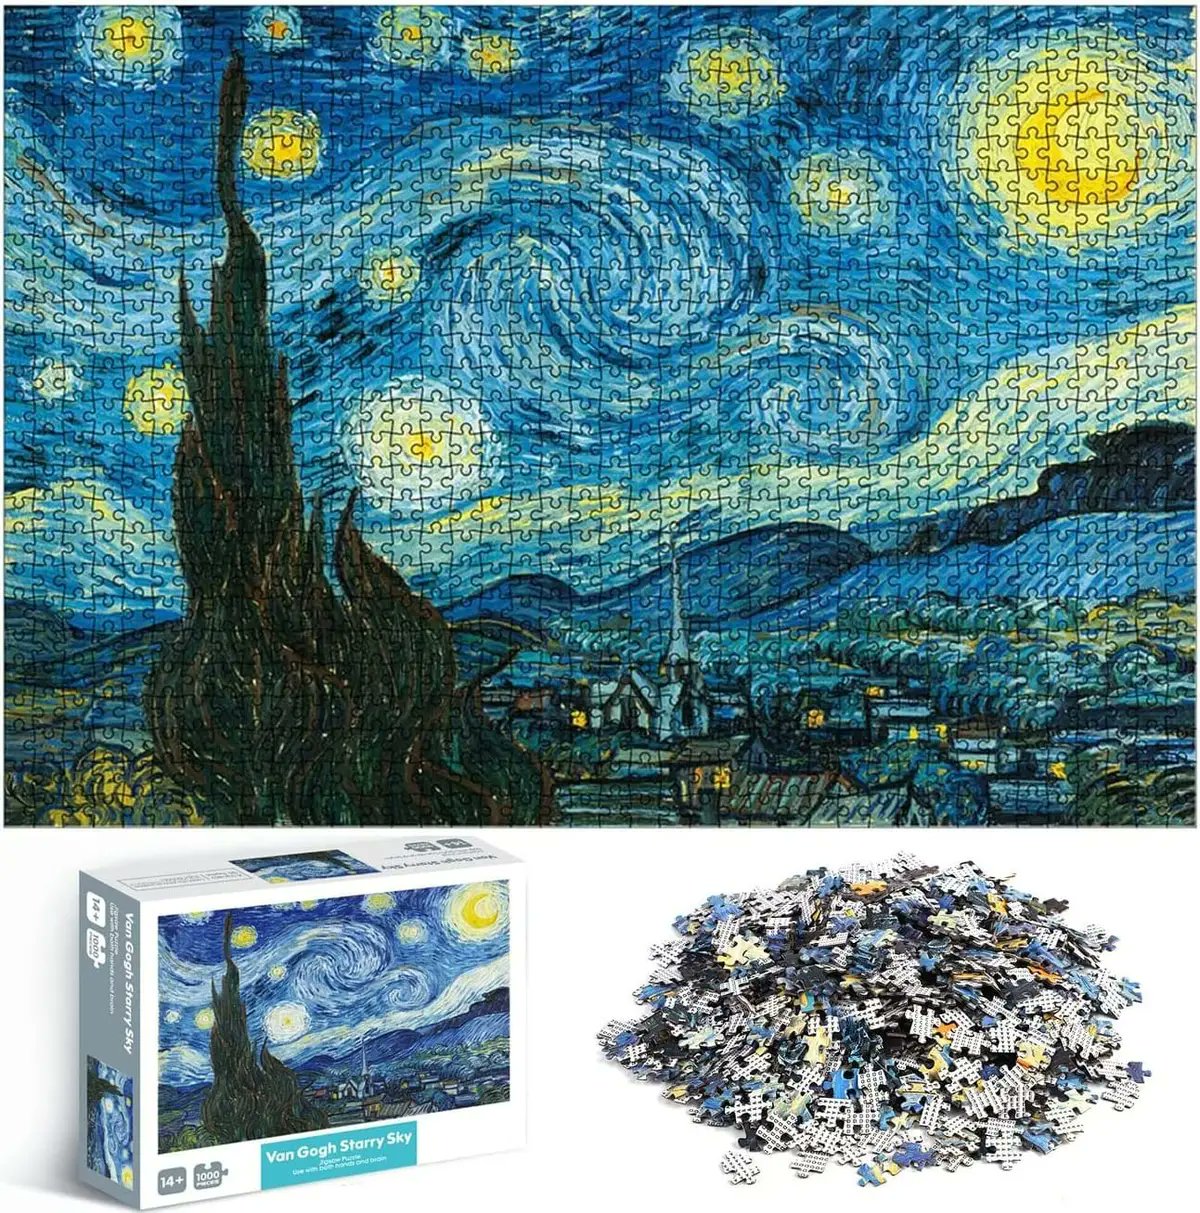 Rincón Curioso on Twitter: de los rompecabezas más hermosos y complicados he visto. La majestuosa Noche Estrellada de Van Gogh en 1000 https://t.co/Lmr6ZzcZL3" / Twitter